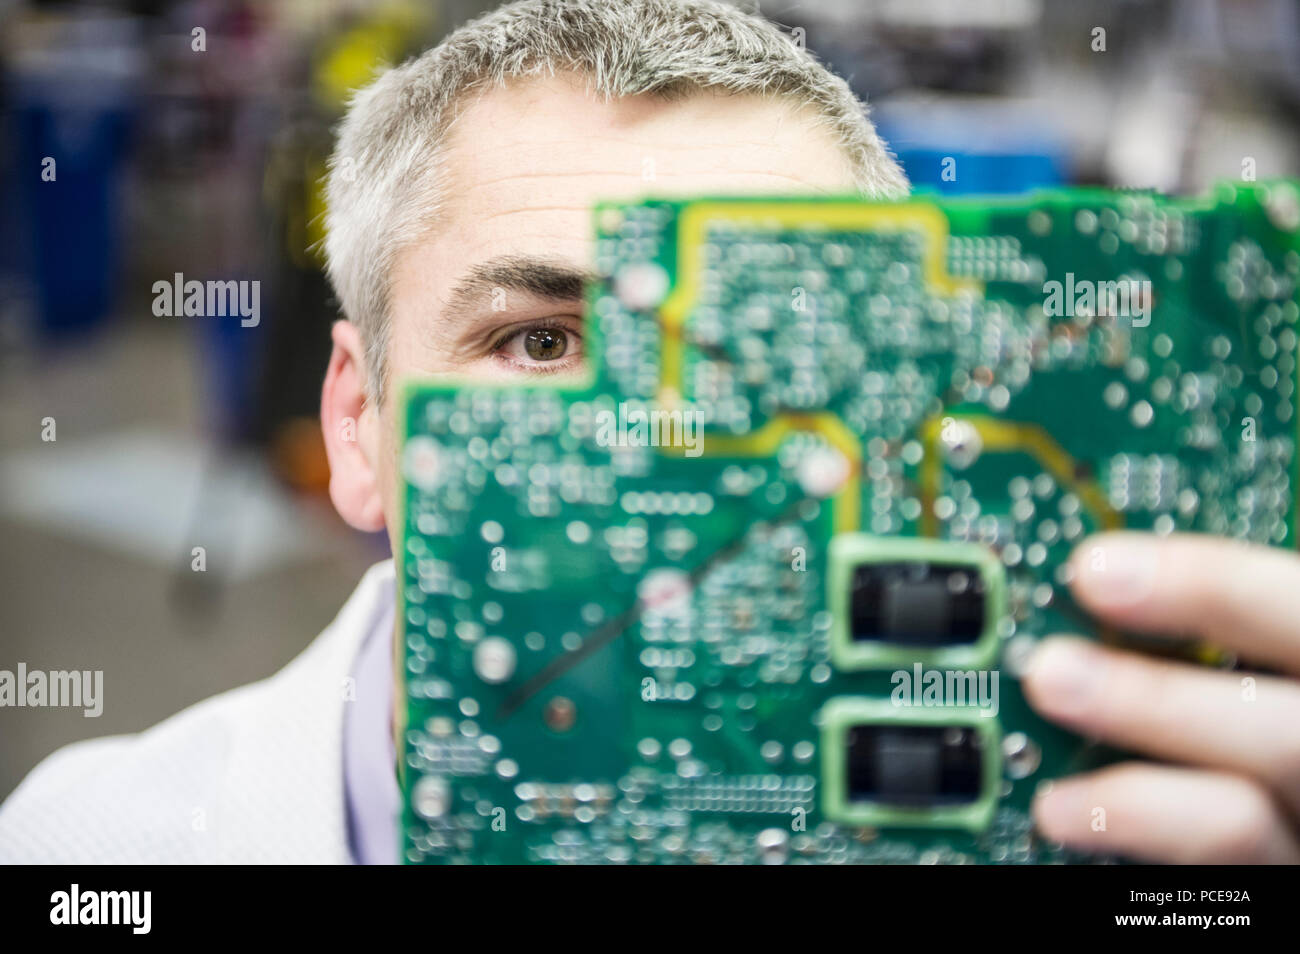 Ein Kaukasier Männlich Techniker examinging eine Platine in der technischen Forschung und Entwicklung. Stockfoto